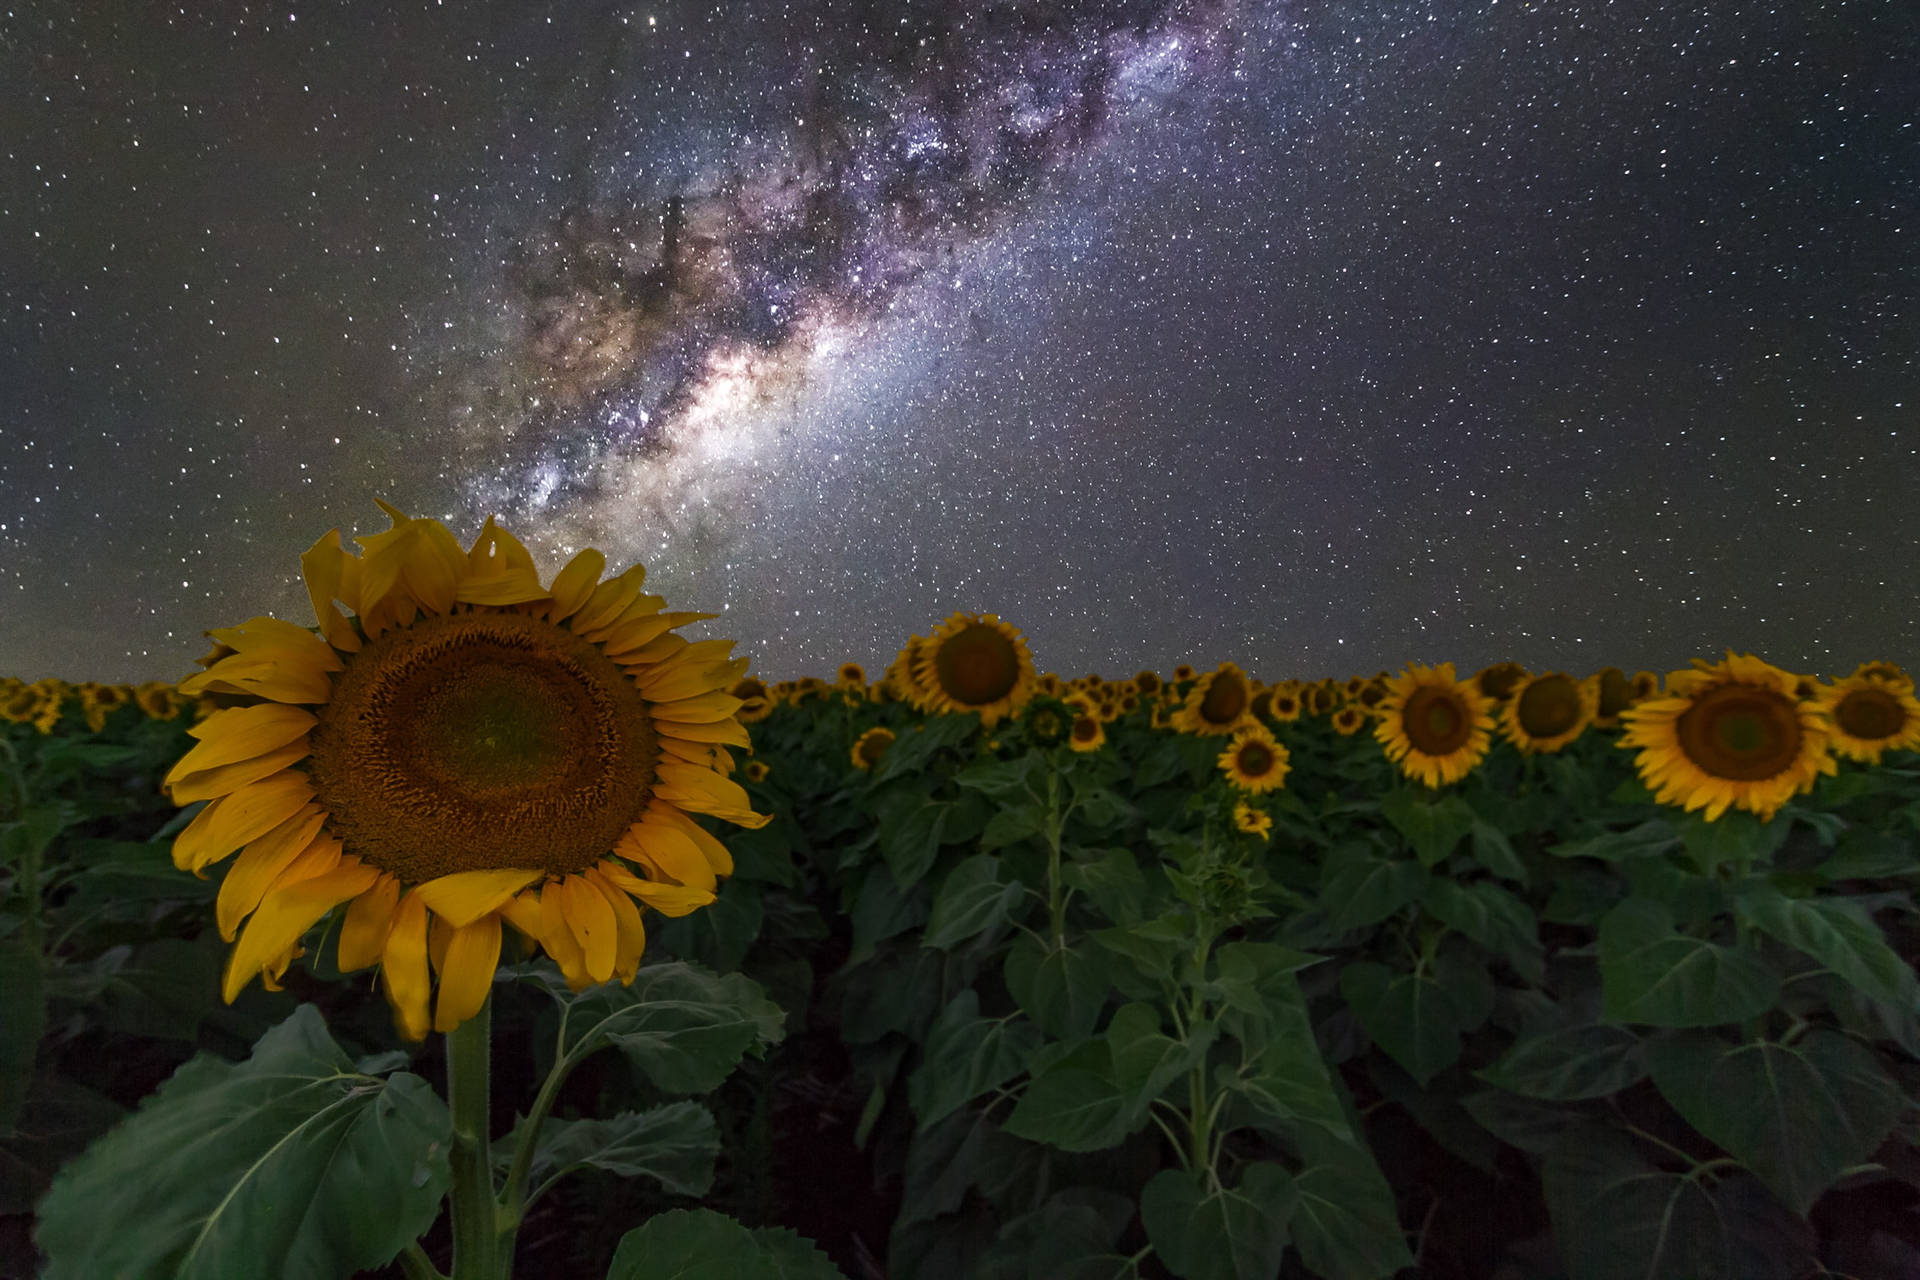 Vintergatanssolros (milky Way Galaxy Sunflower) Wallpaper